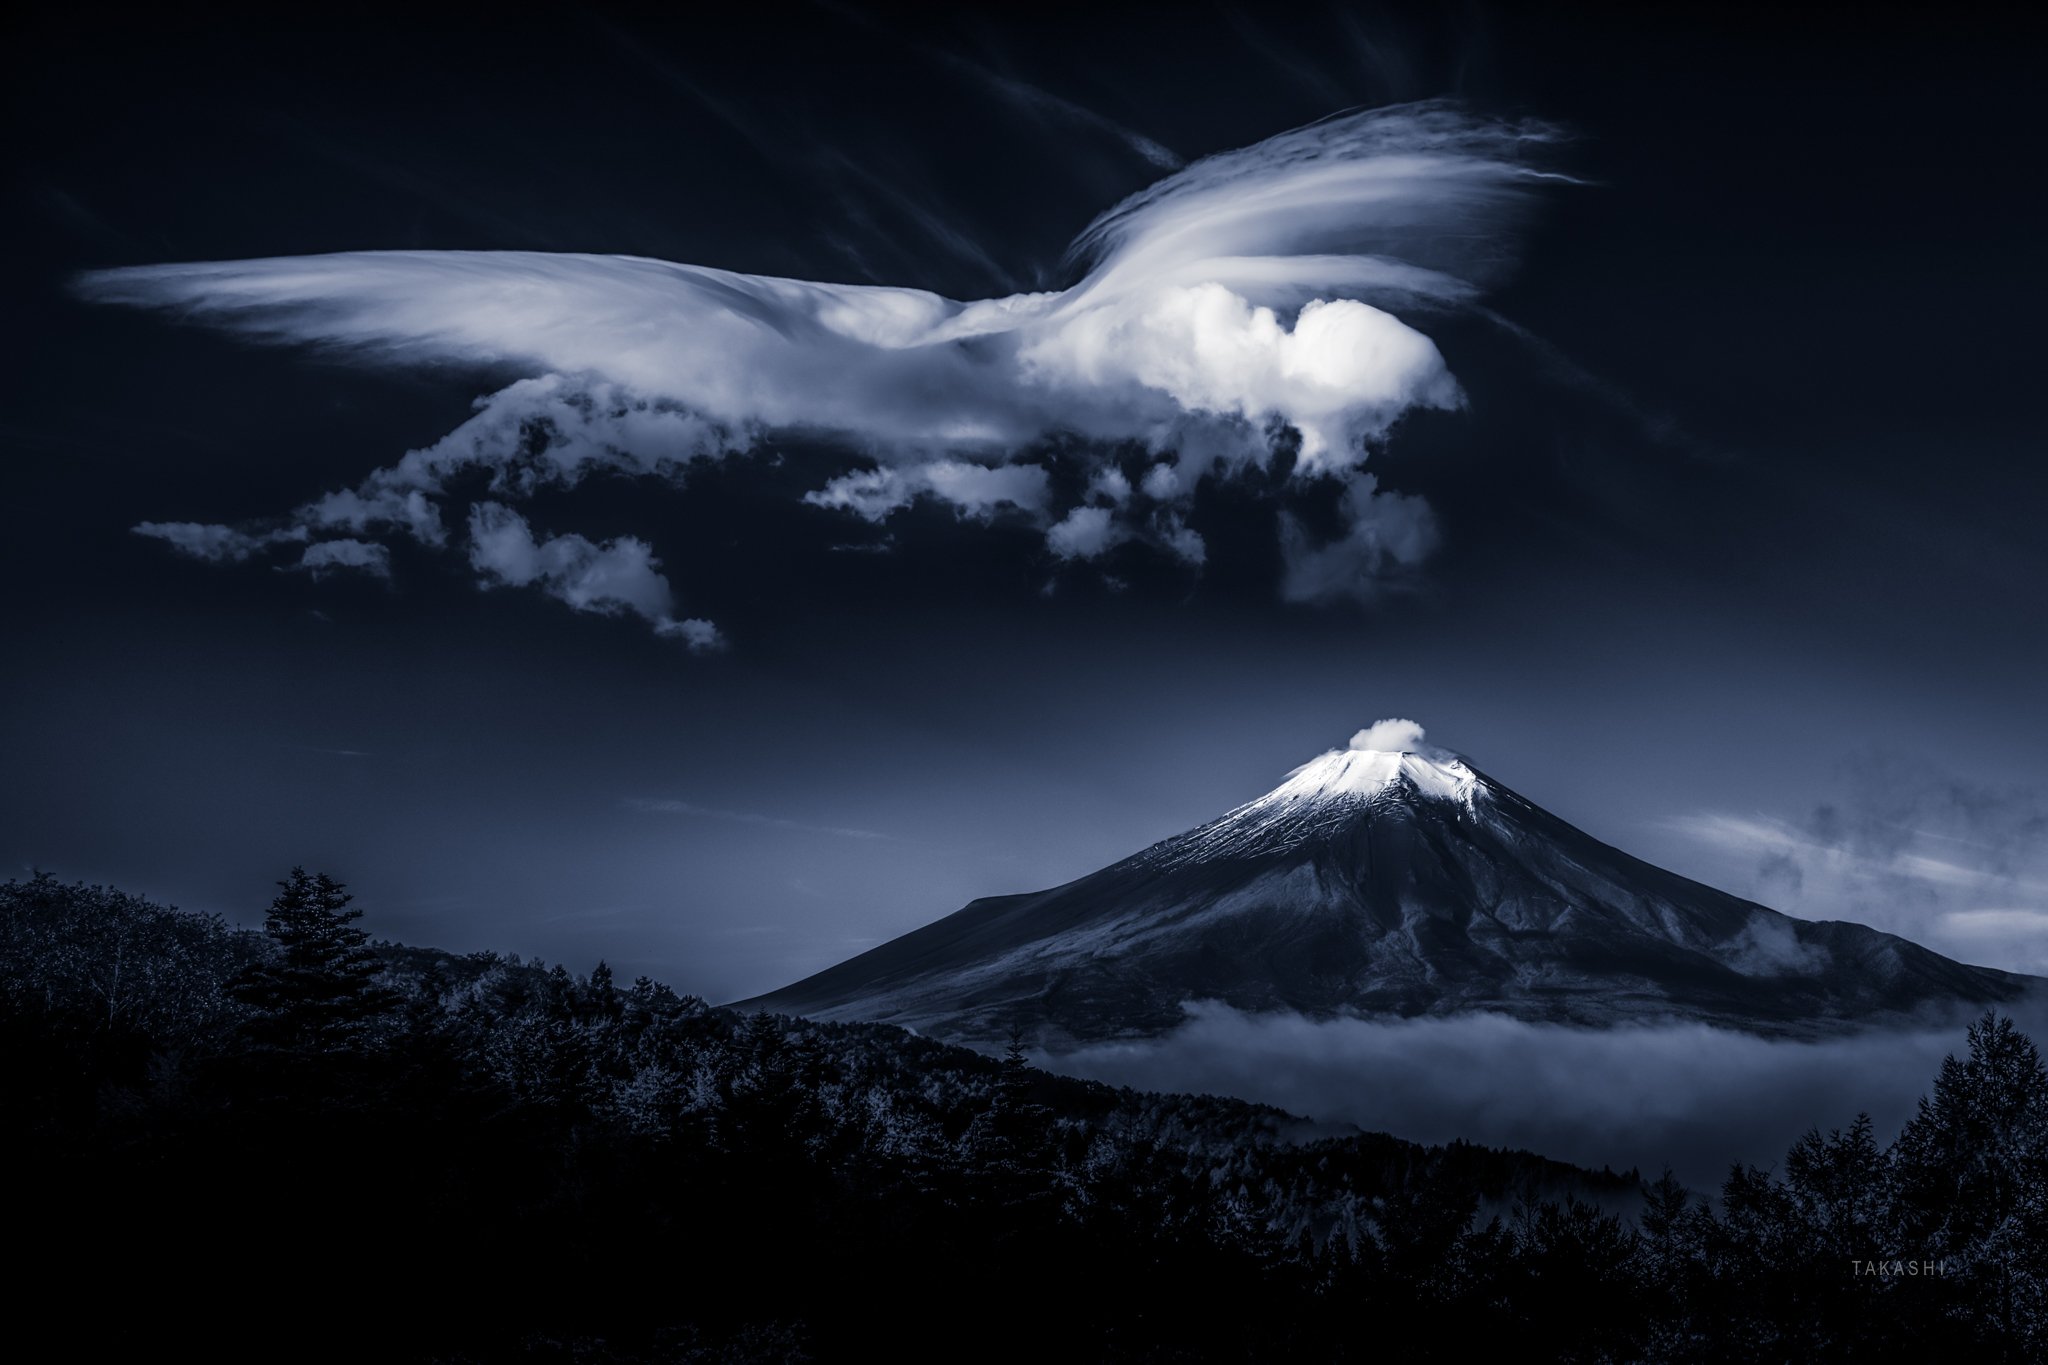 Fuji,Japan,mountain,cloud,phoenix,amazing,fantastic, Takashi